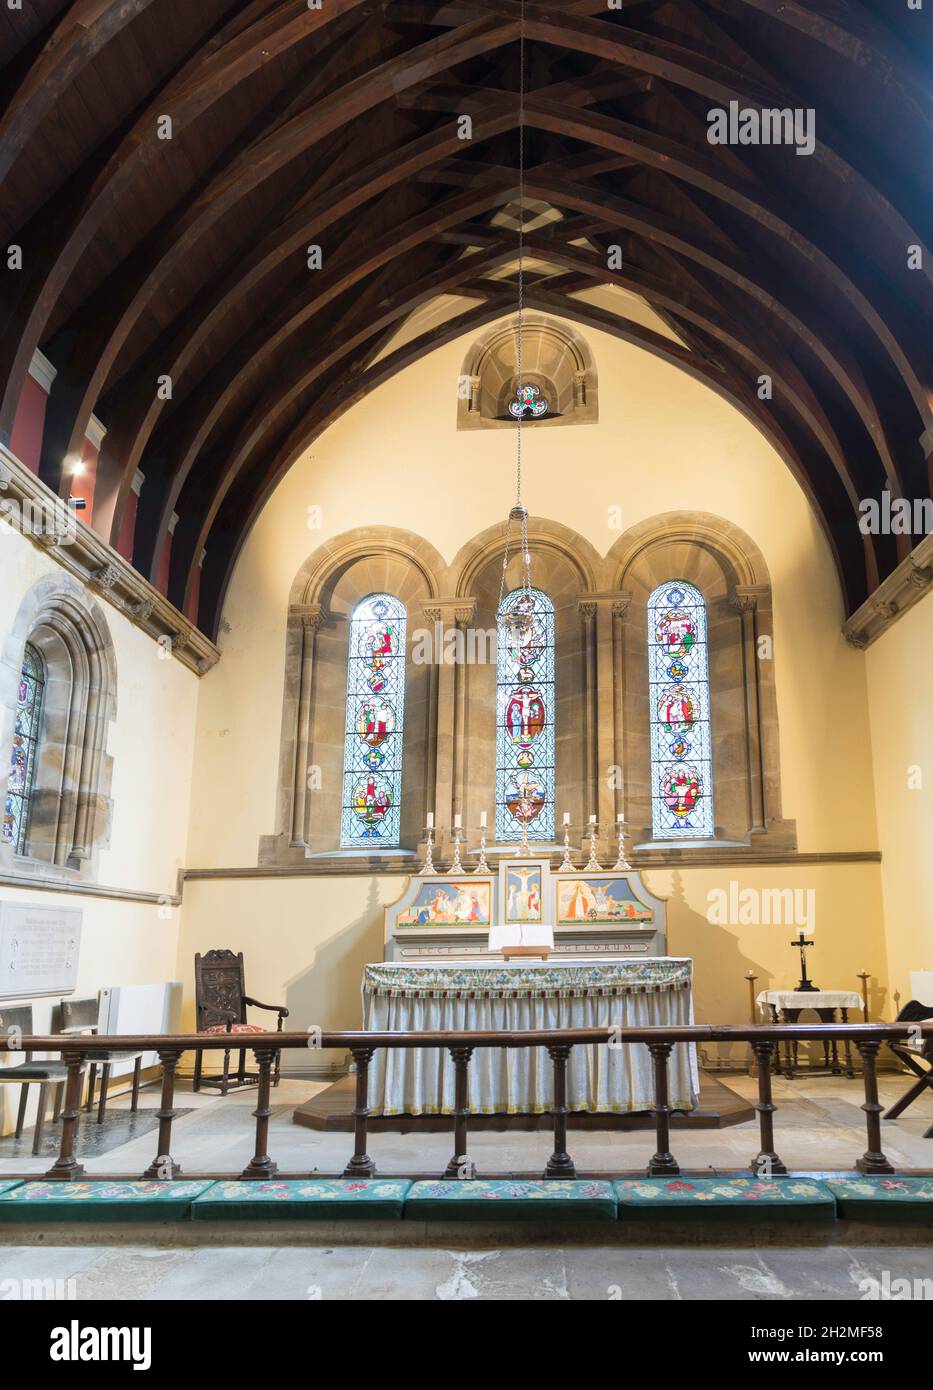 L'intérieur de l'église paroissiale de Howick, St Michael et All Angels, Howick, Northumberland, Angleterre, Royaume-Uni Banque D'Images